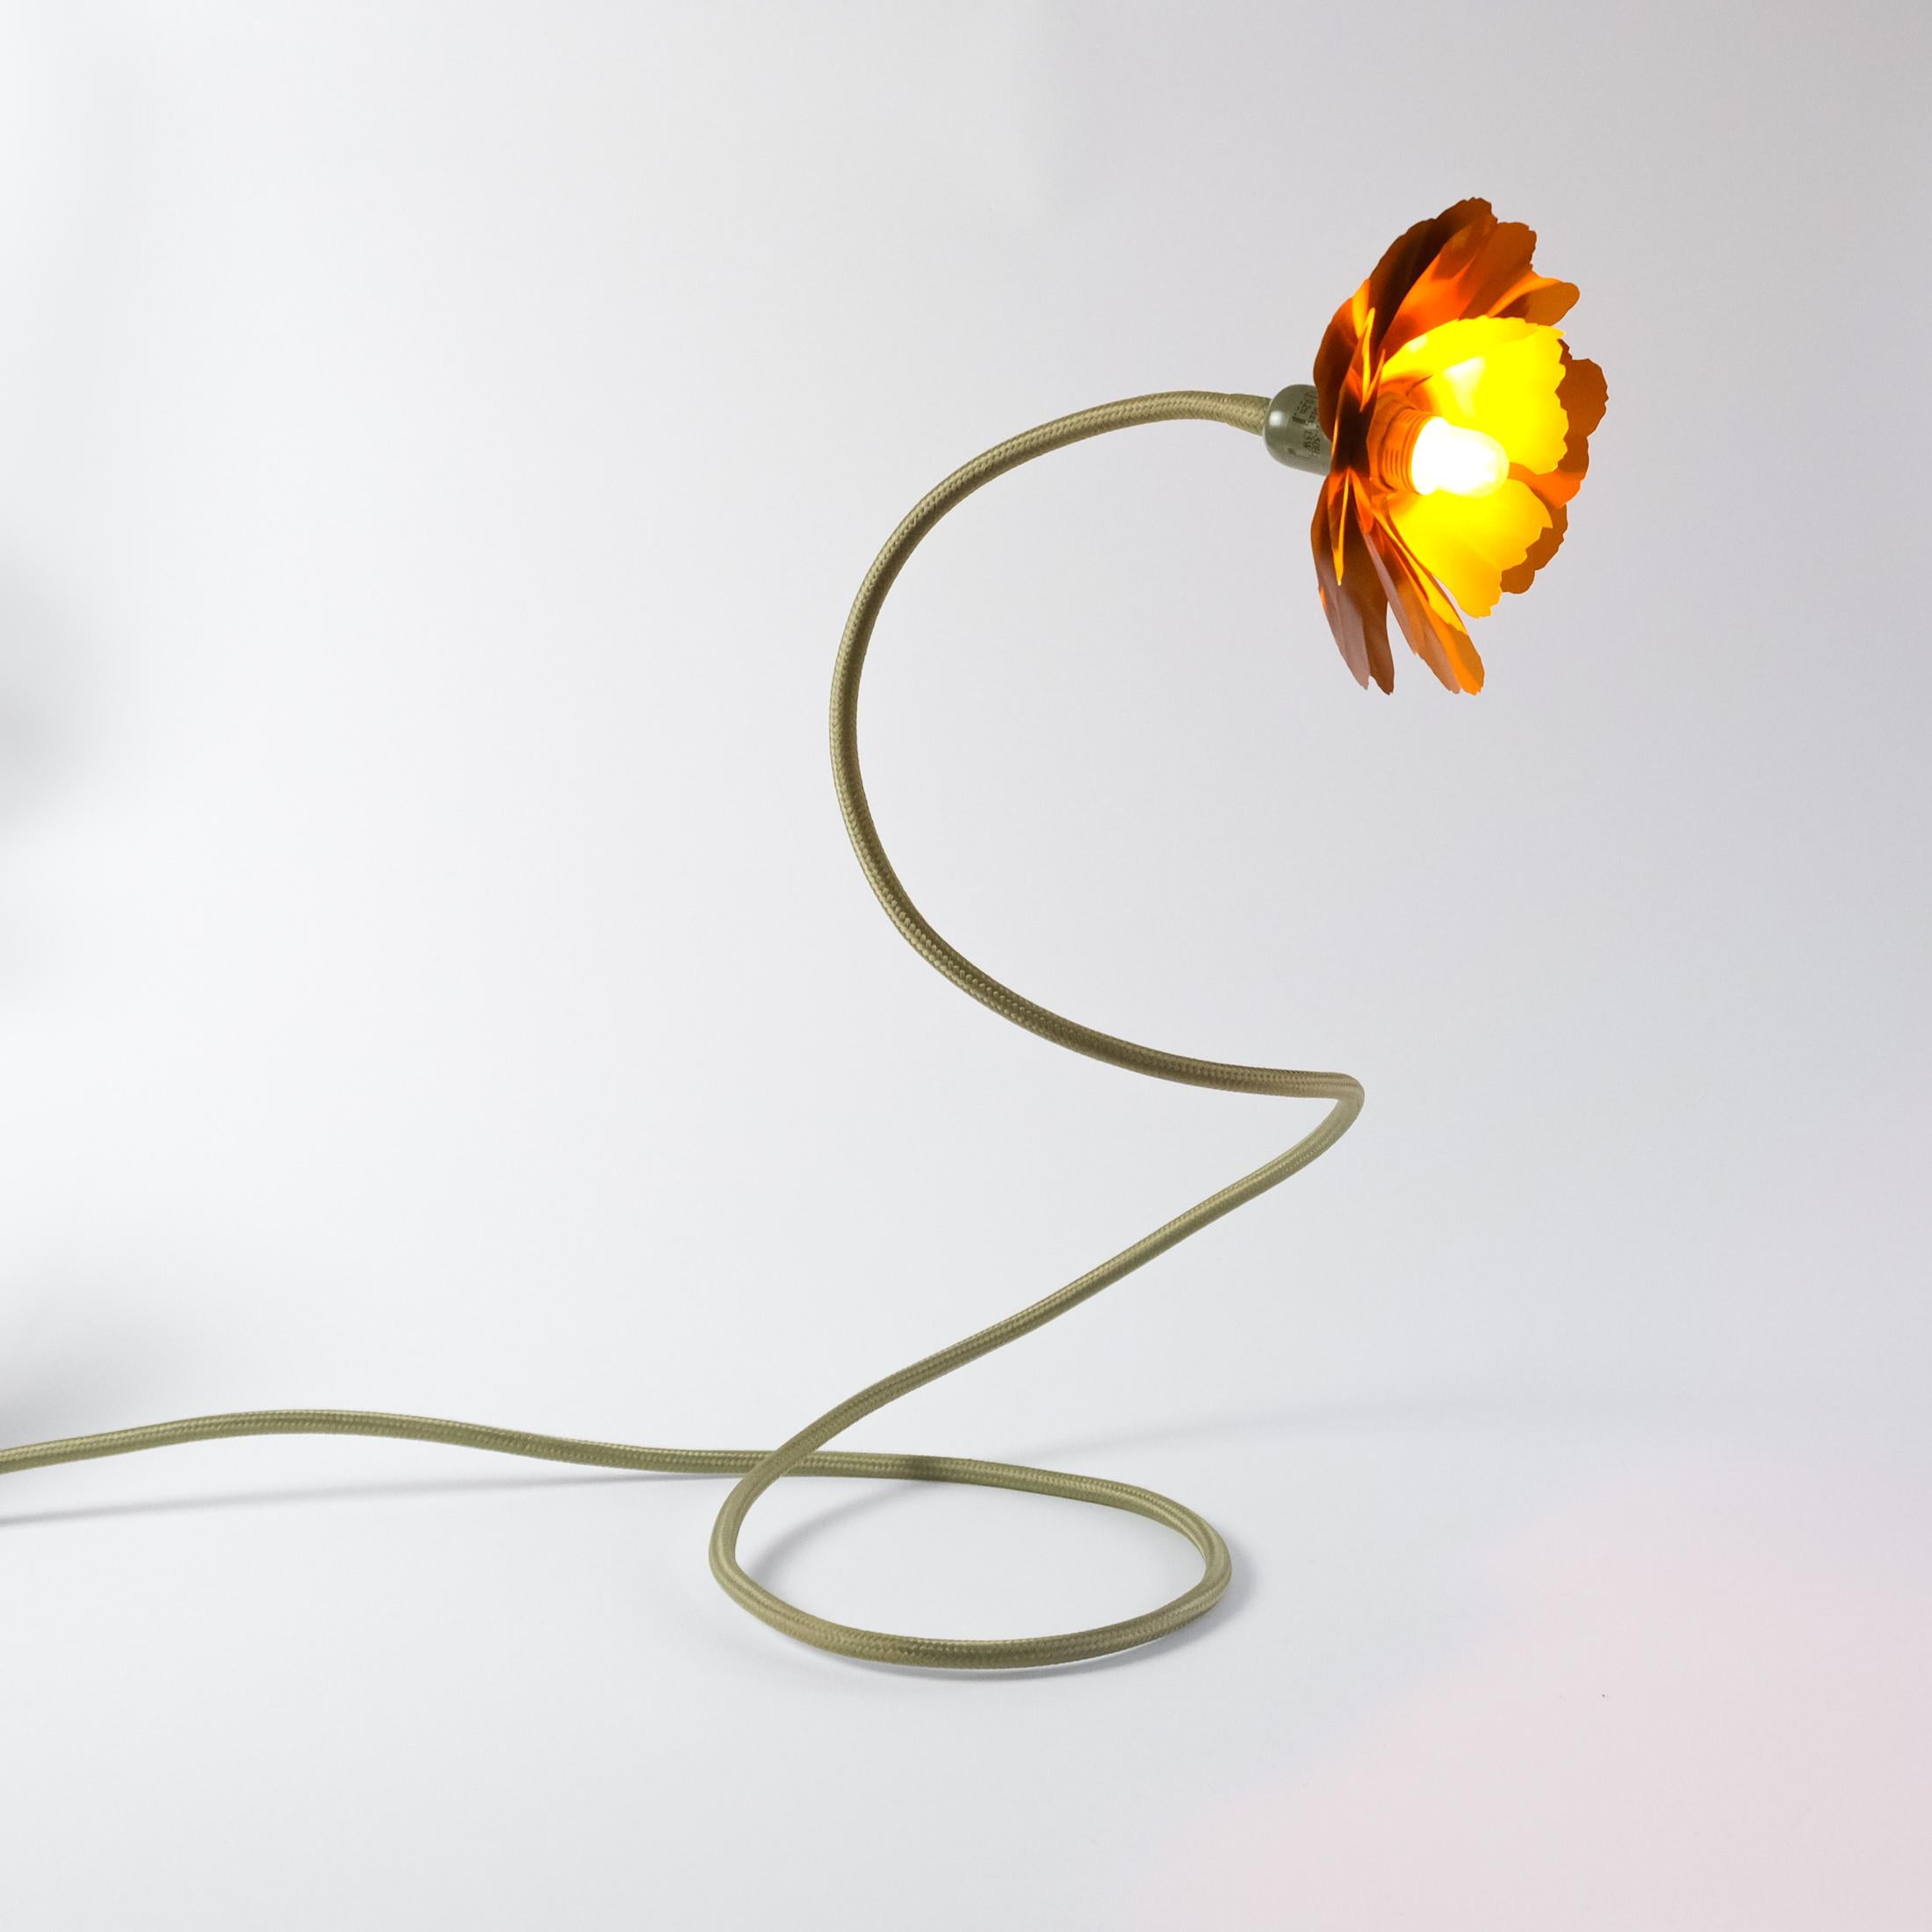 Helena Christensen's Flexible Flower Lamp for Habitat “V.I.P” Collection, 2004 For Sale 2